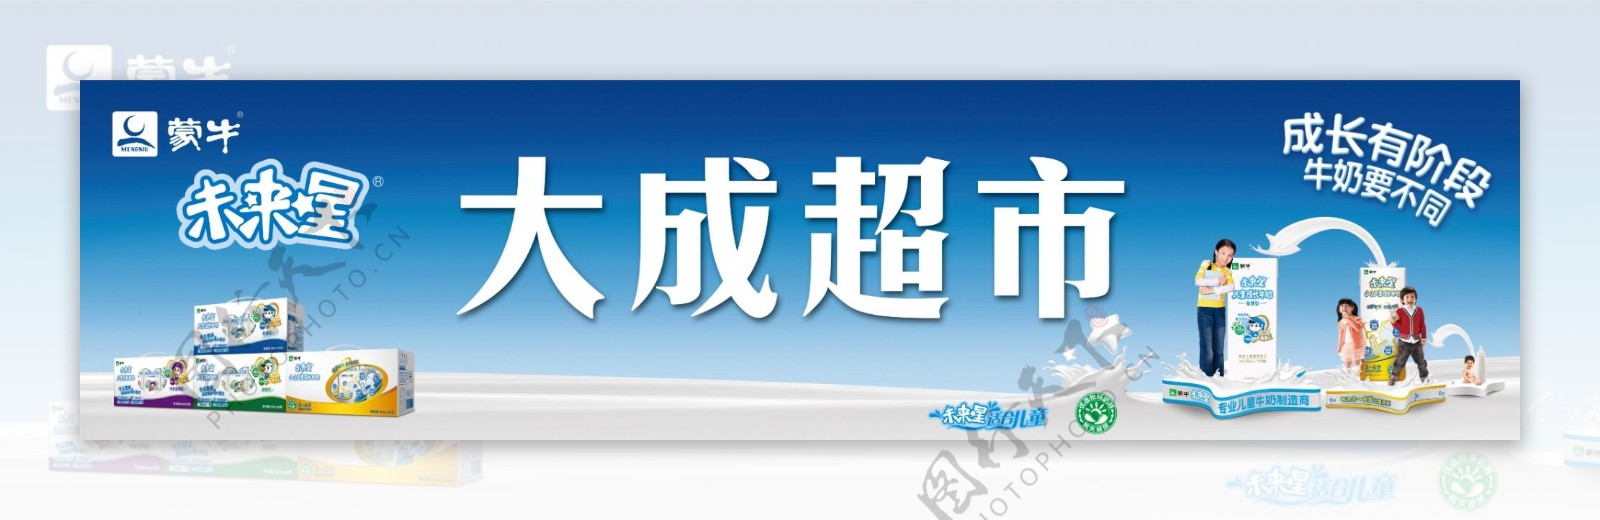 蒙牛未来星2012最新店招形象图片